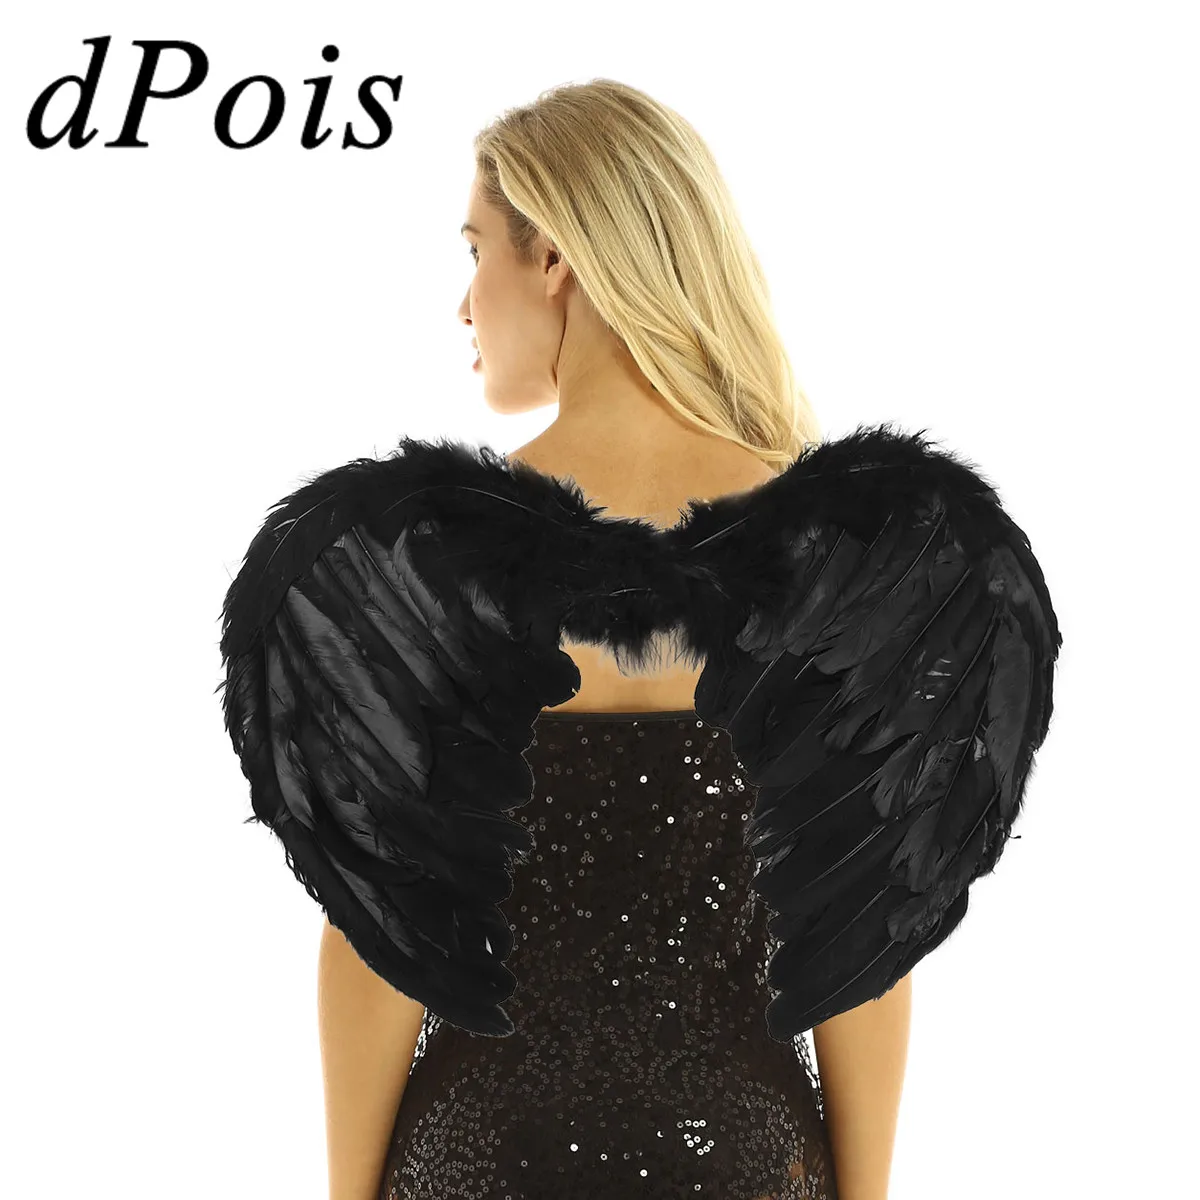 

DPOIS Крылья ангела для танцев, Женский костюм с крыльями ангела черного и белого цвета, одежда для косплея на Хэллоуин, ролевая принадлежност...